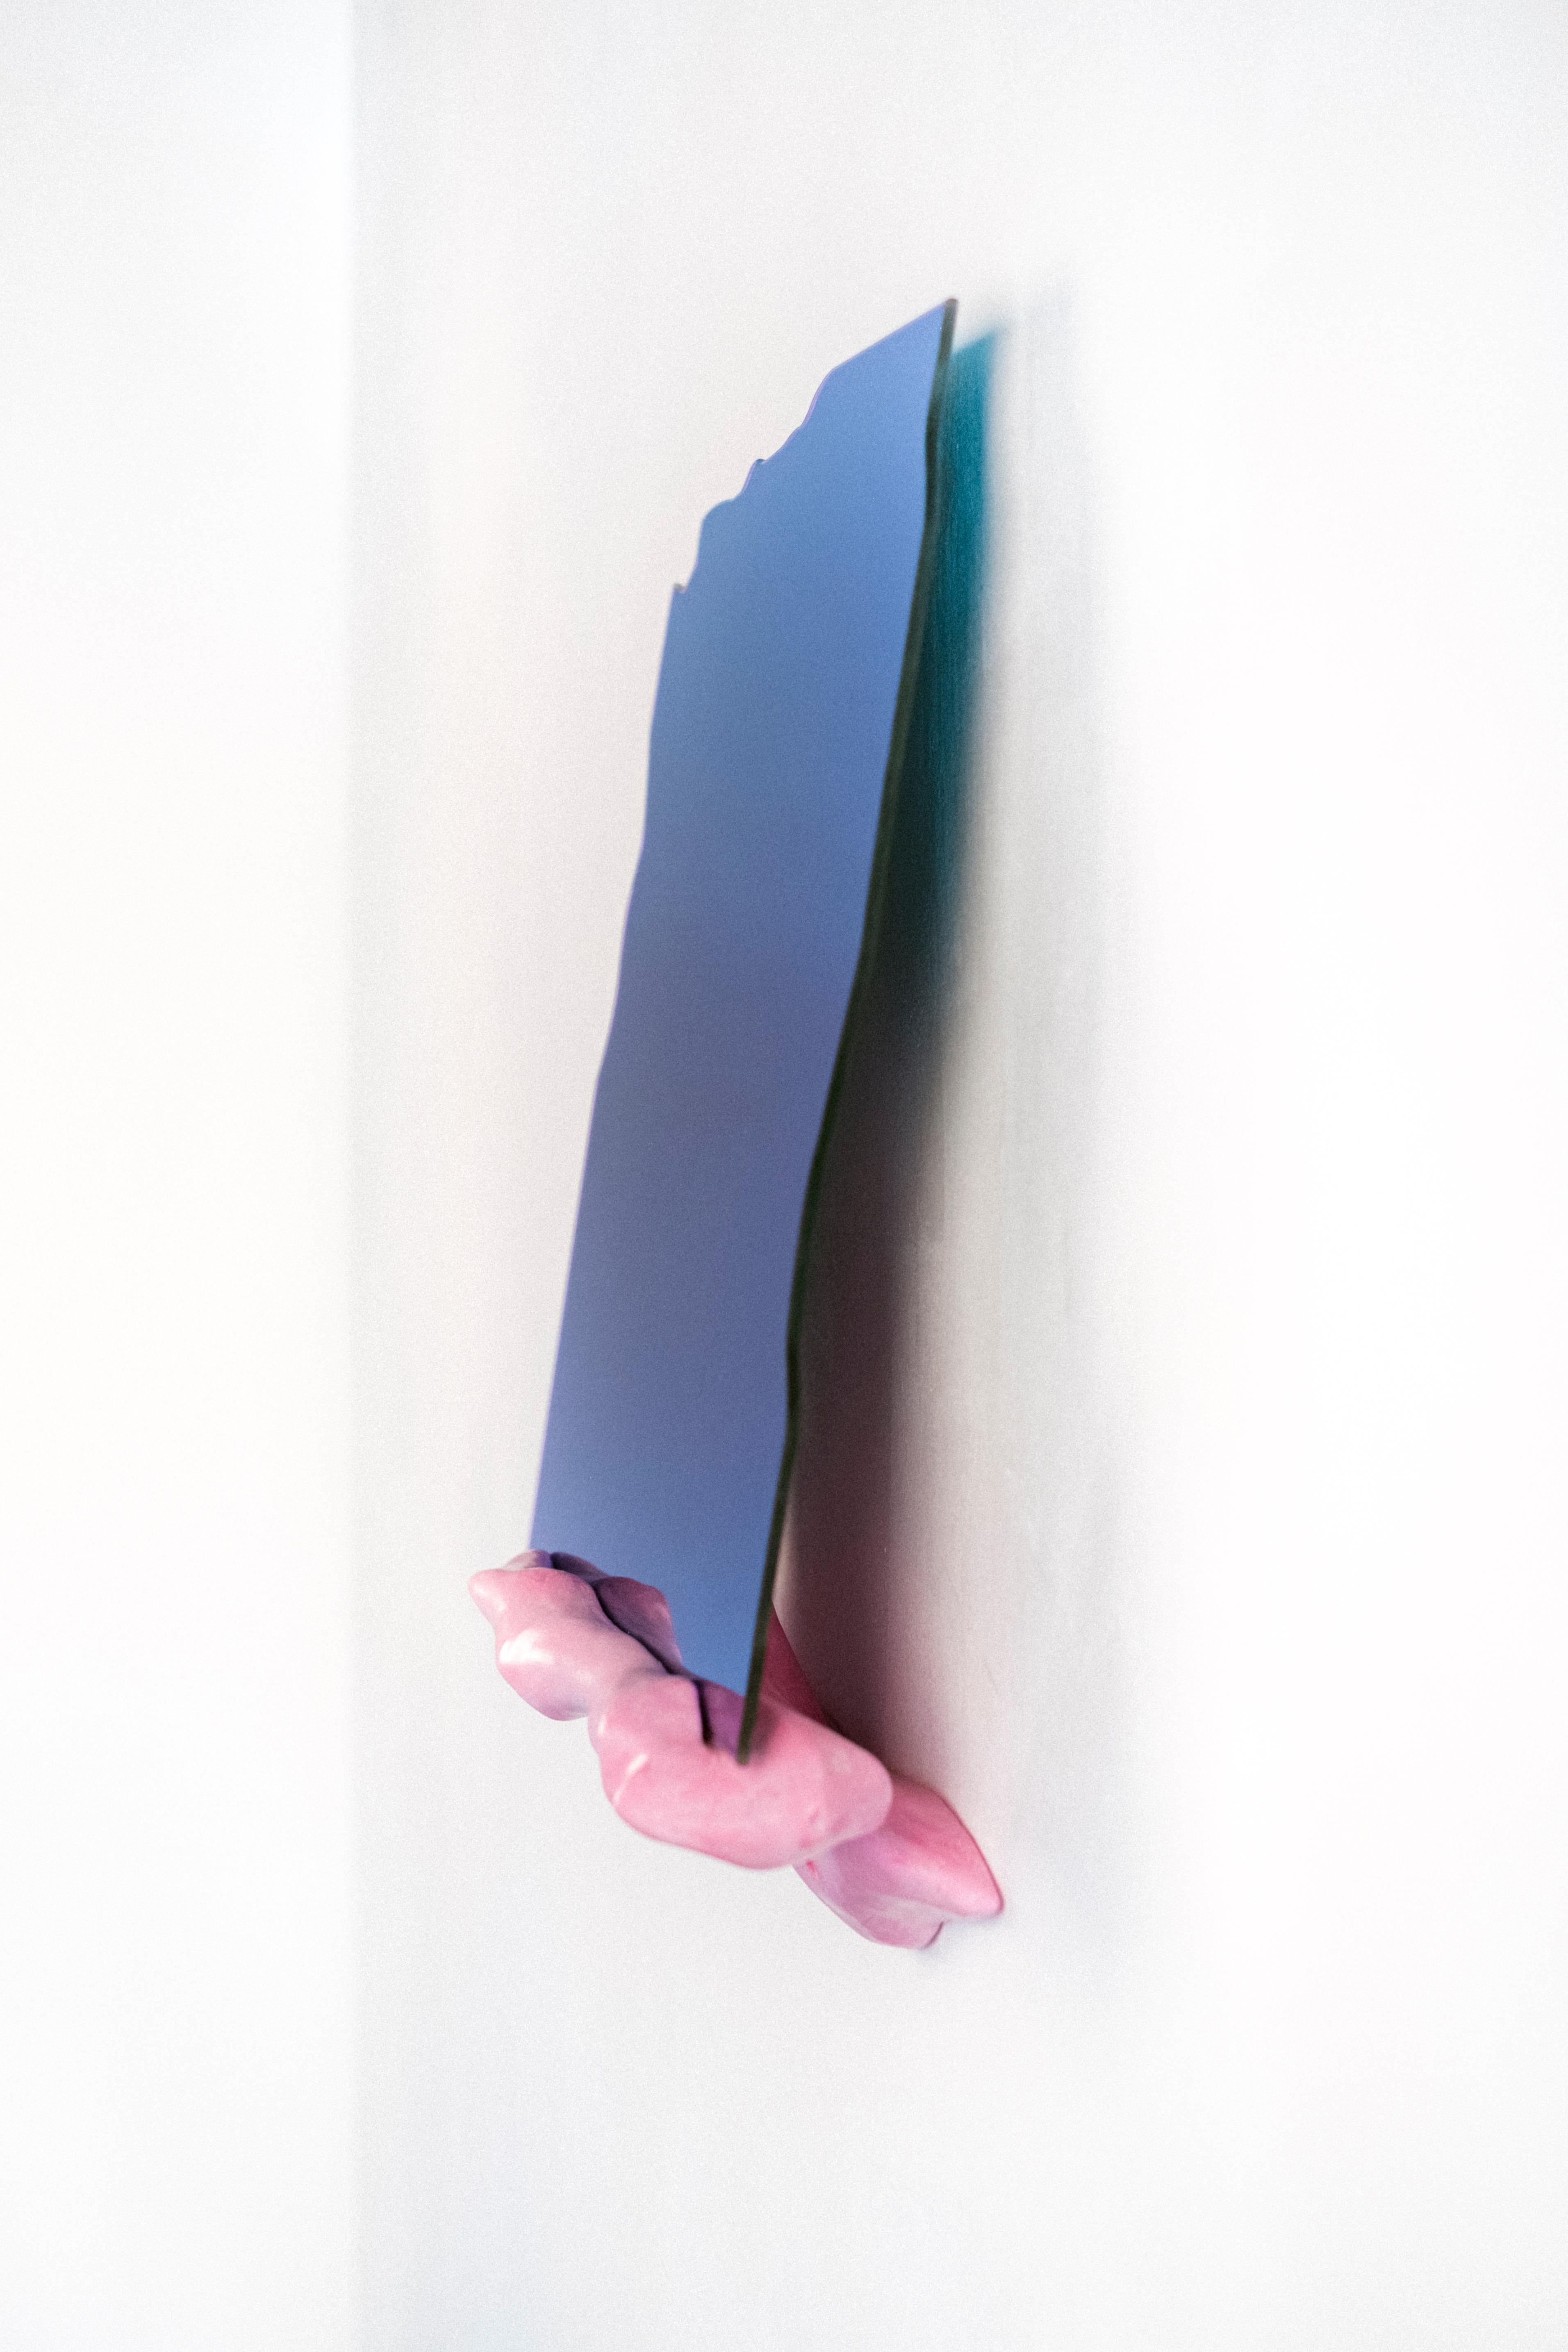 Maximalismus Wandspiegel von Studio Gert Wessels, in blau/rosa. Handgefertigt in einer organischen Form und hergestellt in seinem Studio in den Niederlanden. 

In seiner täglichen Praxis erforscht er die Beziehung zwischen Form und Funktion. Das